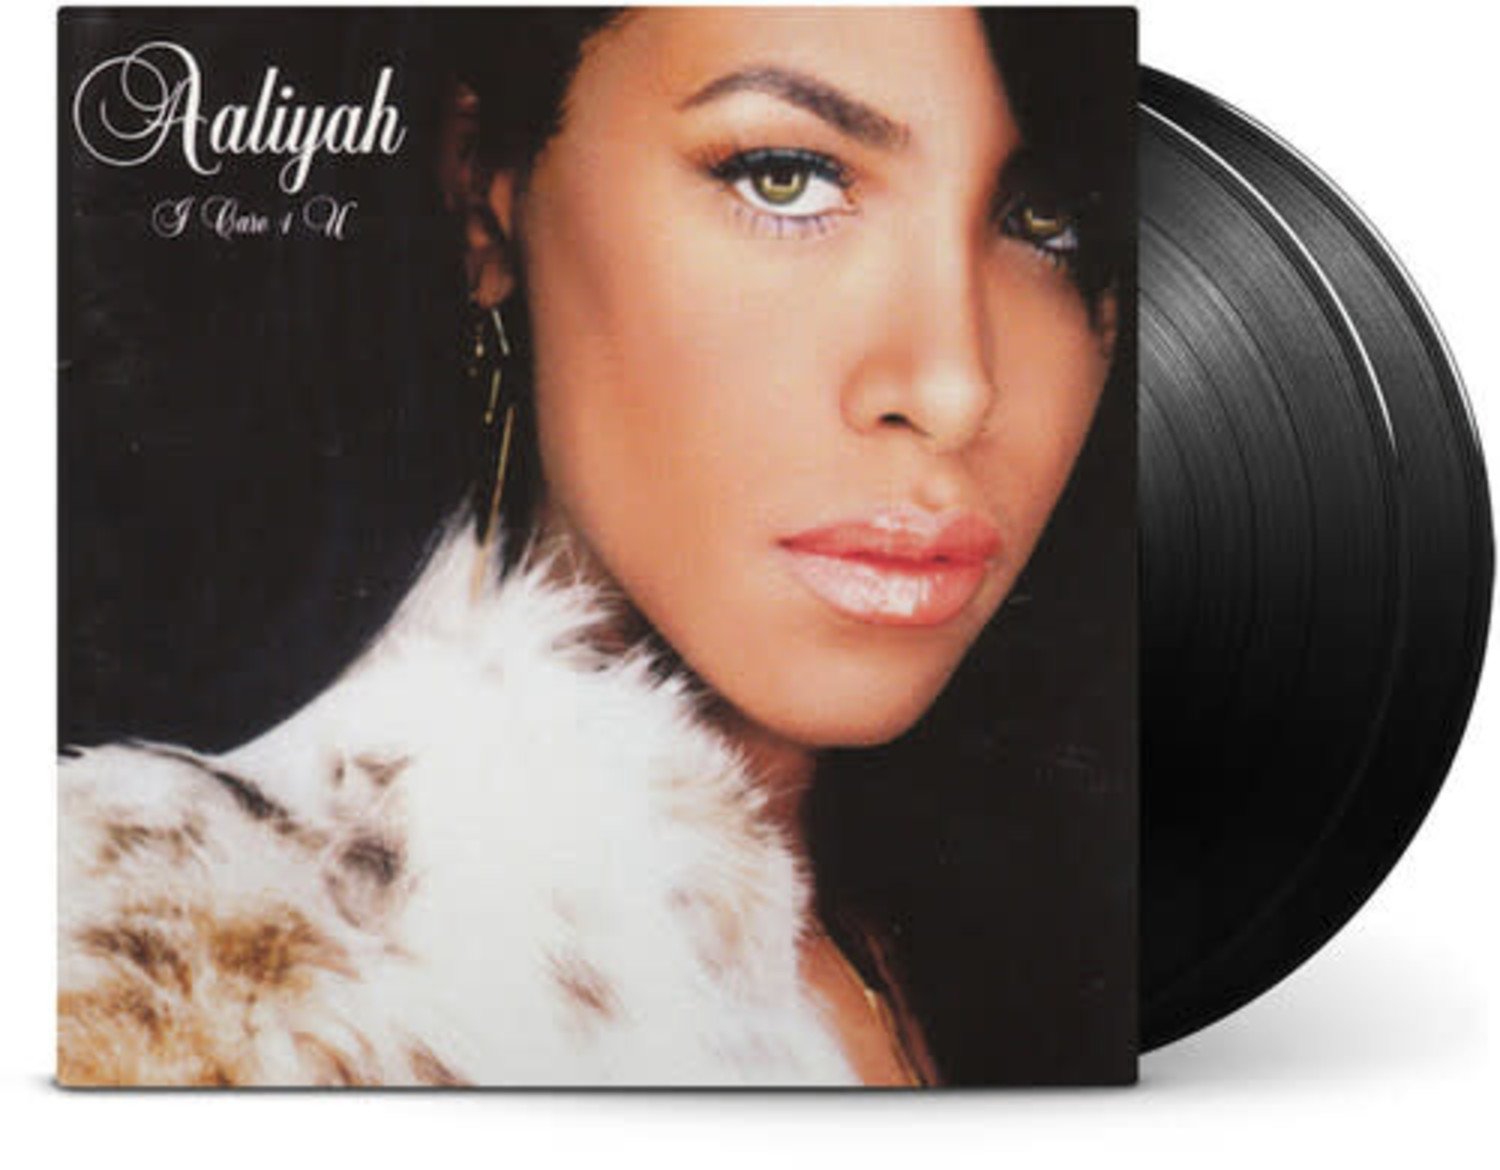 Aaliyah - I Care 4 U 2LP - Wax Trax Records